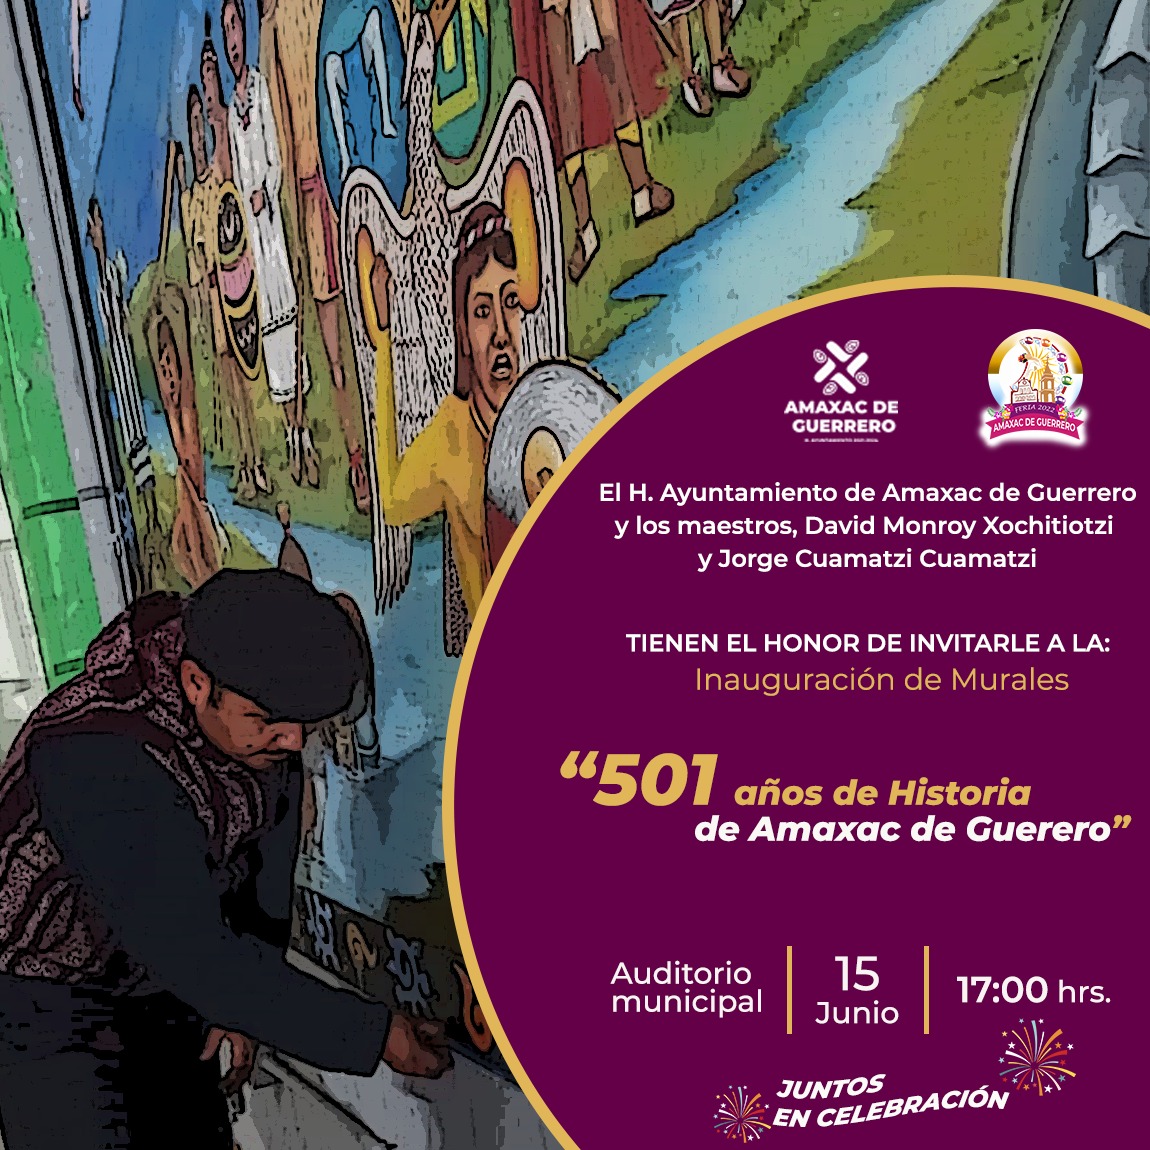 Ayuntamiento de Amaxac te invita a la inauguración de murales